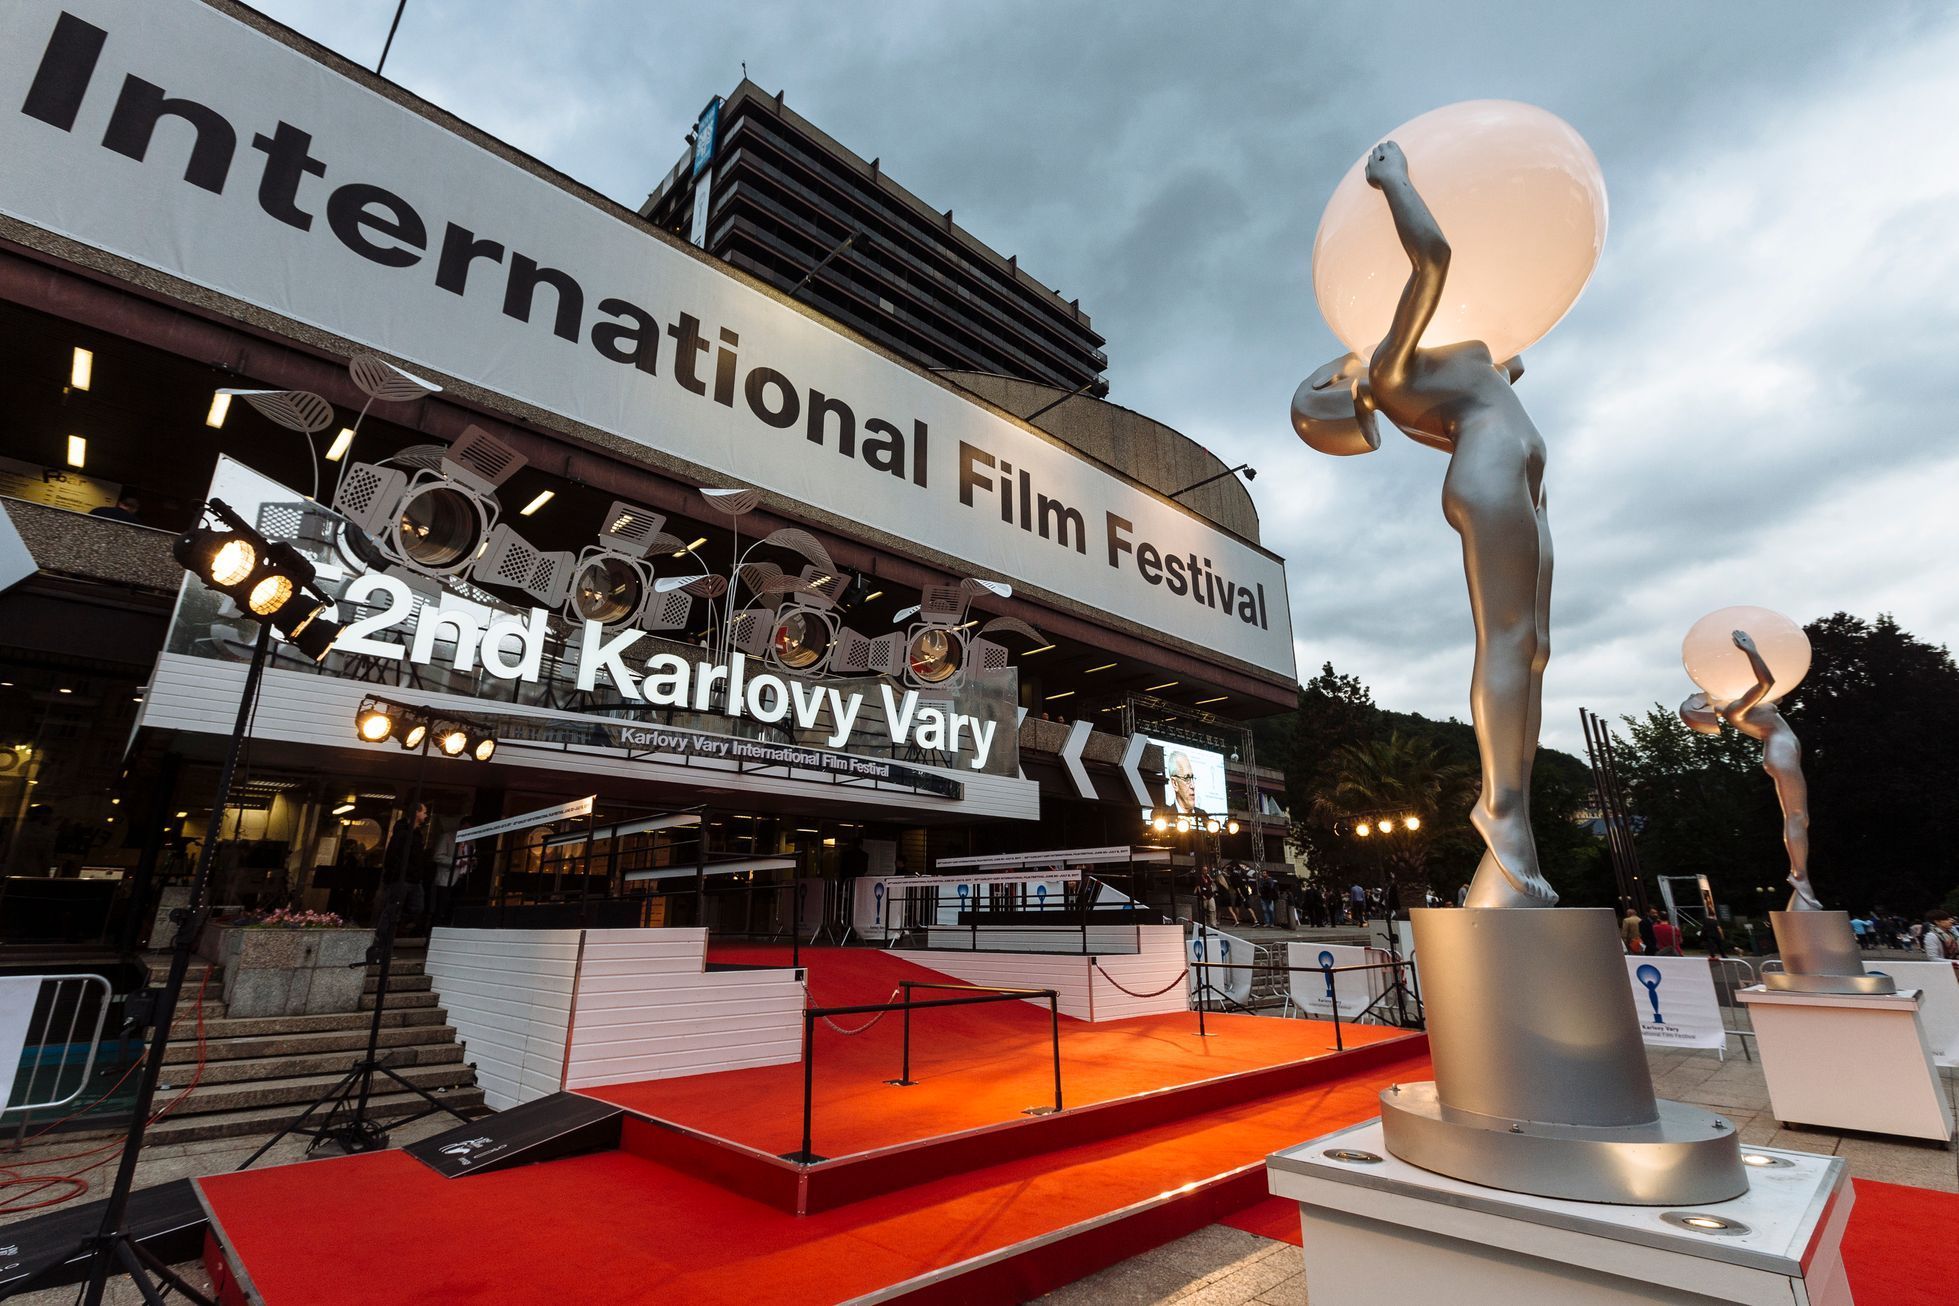 52 Mezinarodni Filmovy Festival Karlovy Vary Mffkv 2017 Aktualne Cz